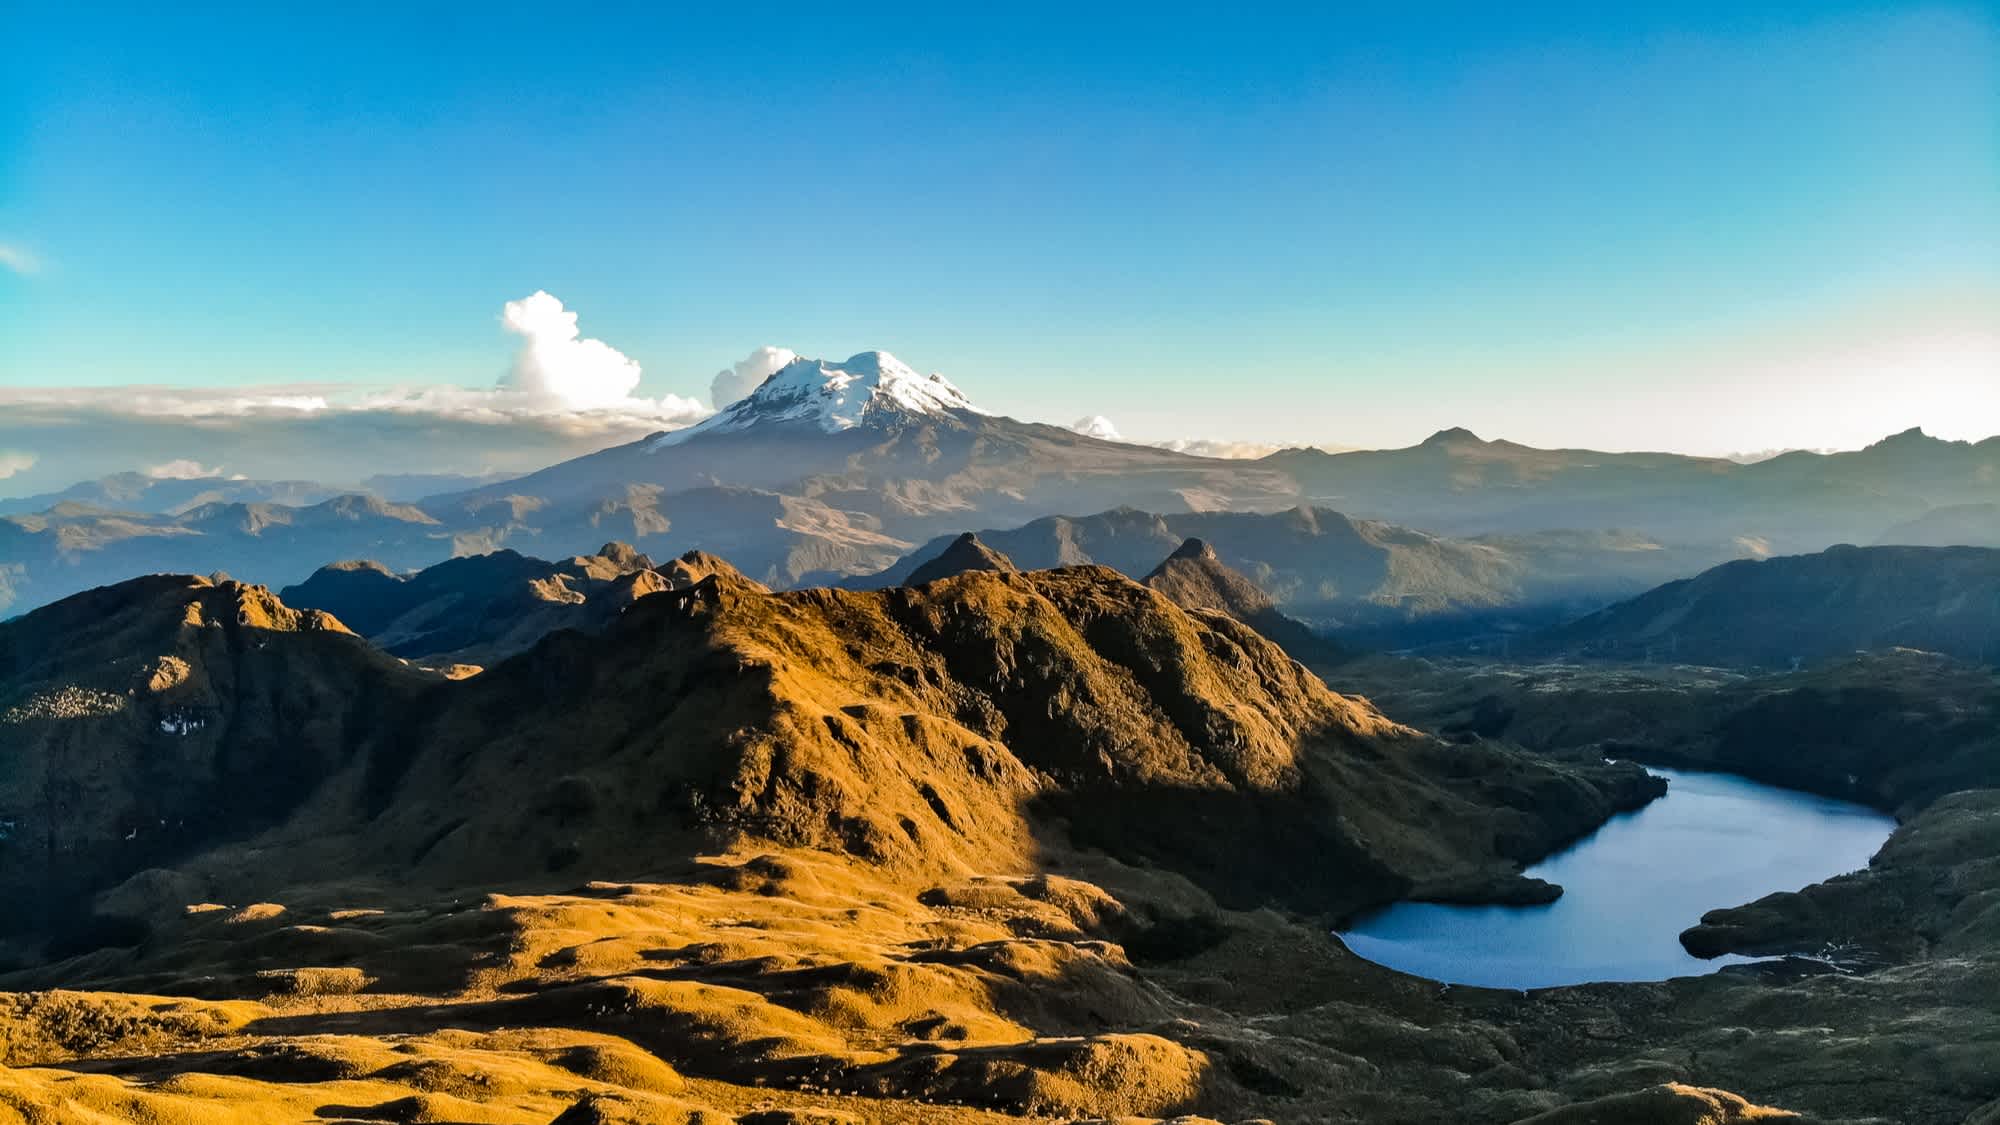 Le volcan Antisana dans la cordillère orientale des Andes équatoriennes vu depuis la réserve de Cayambe Coca.